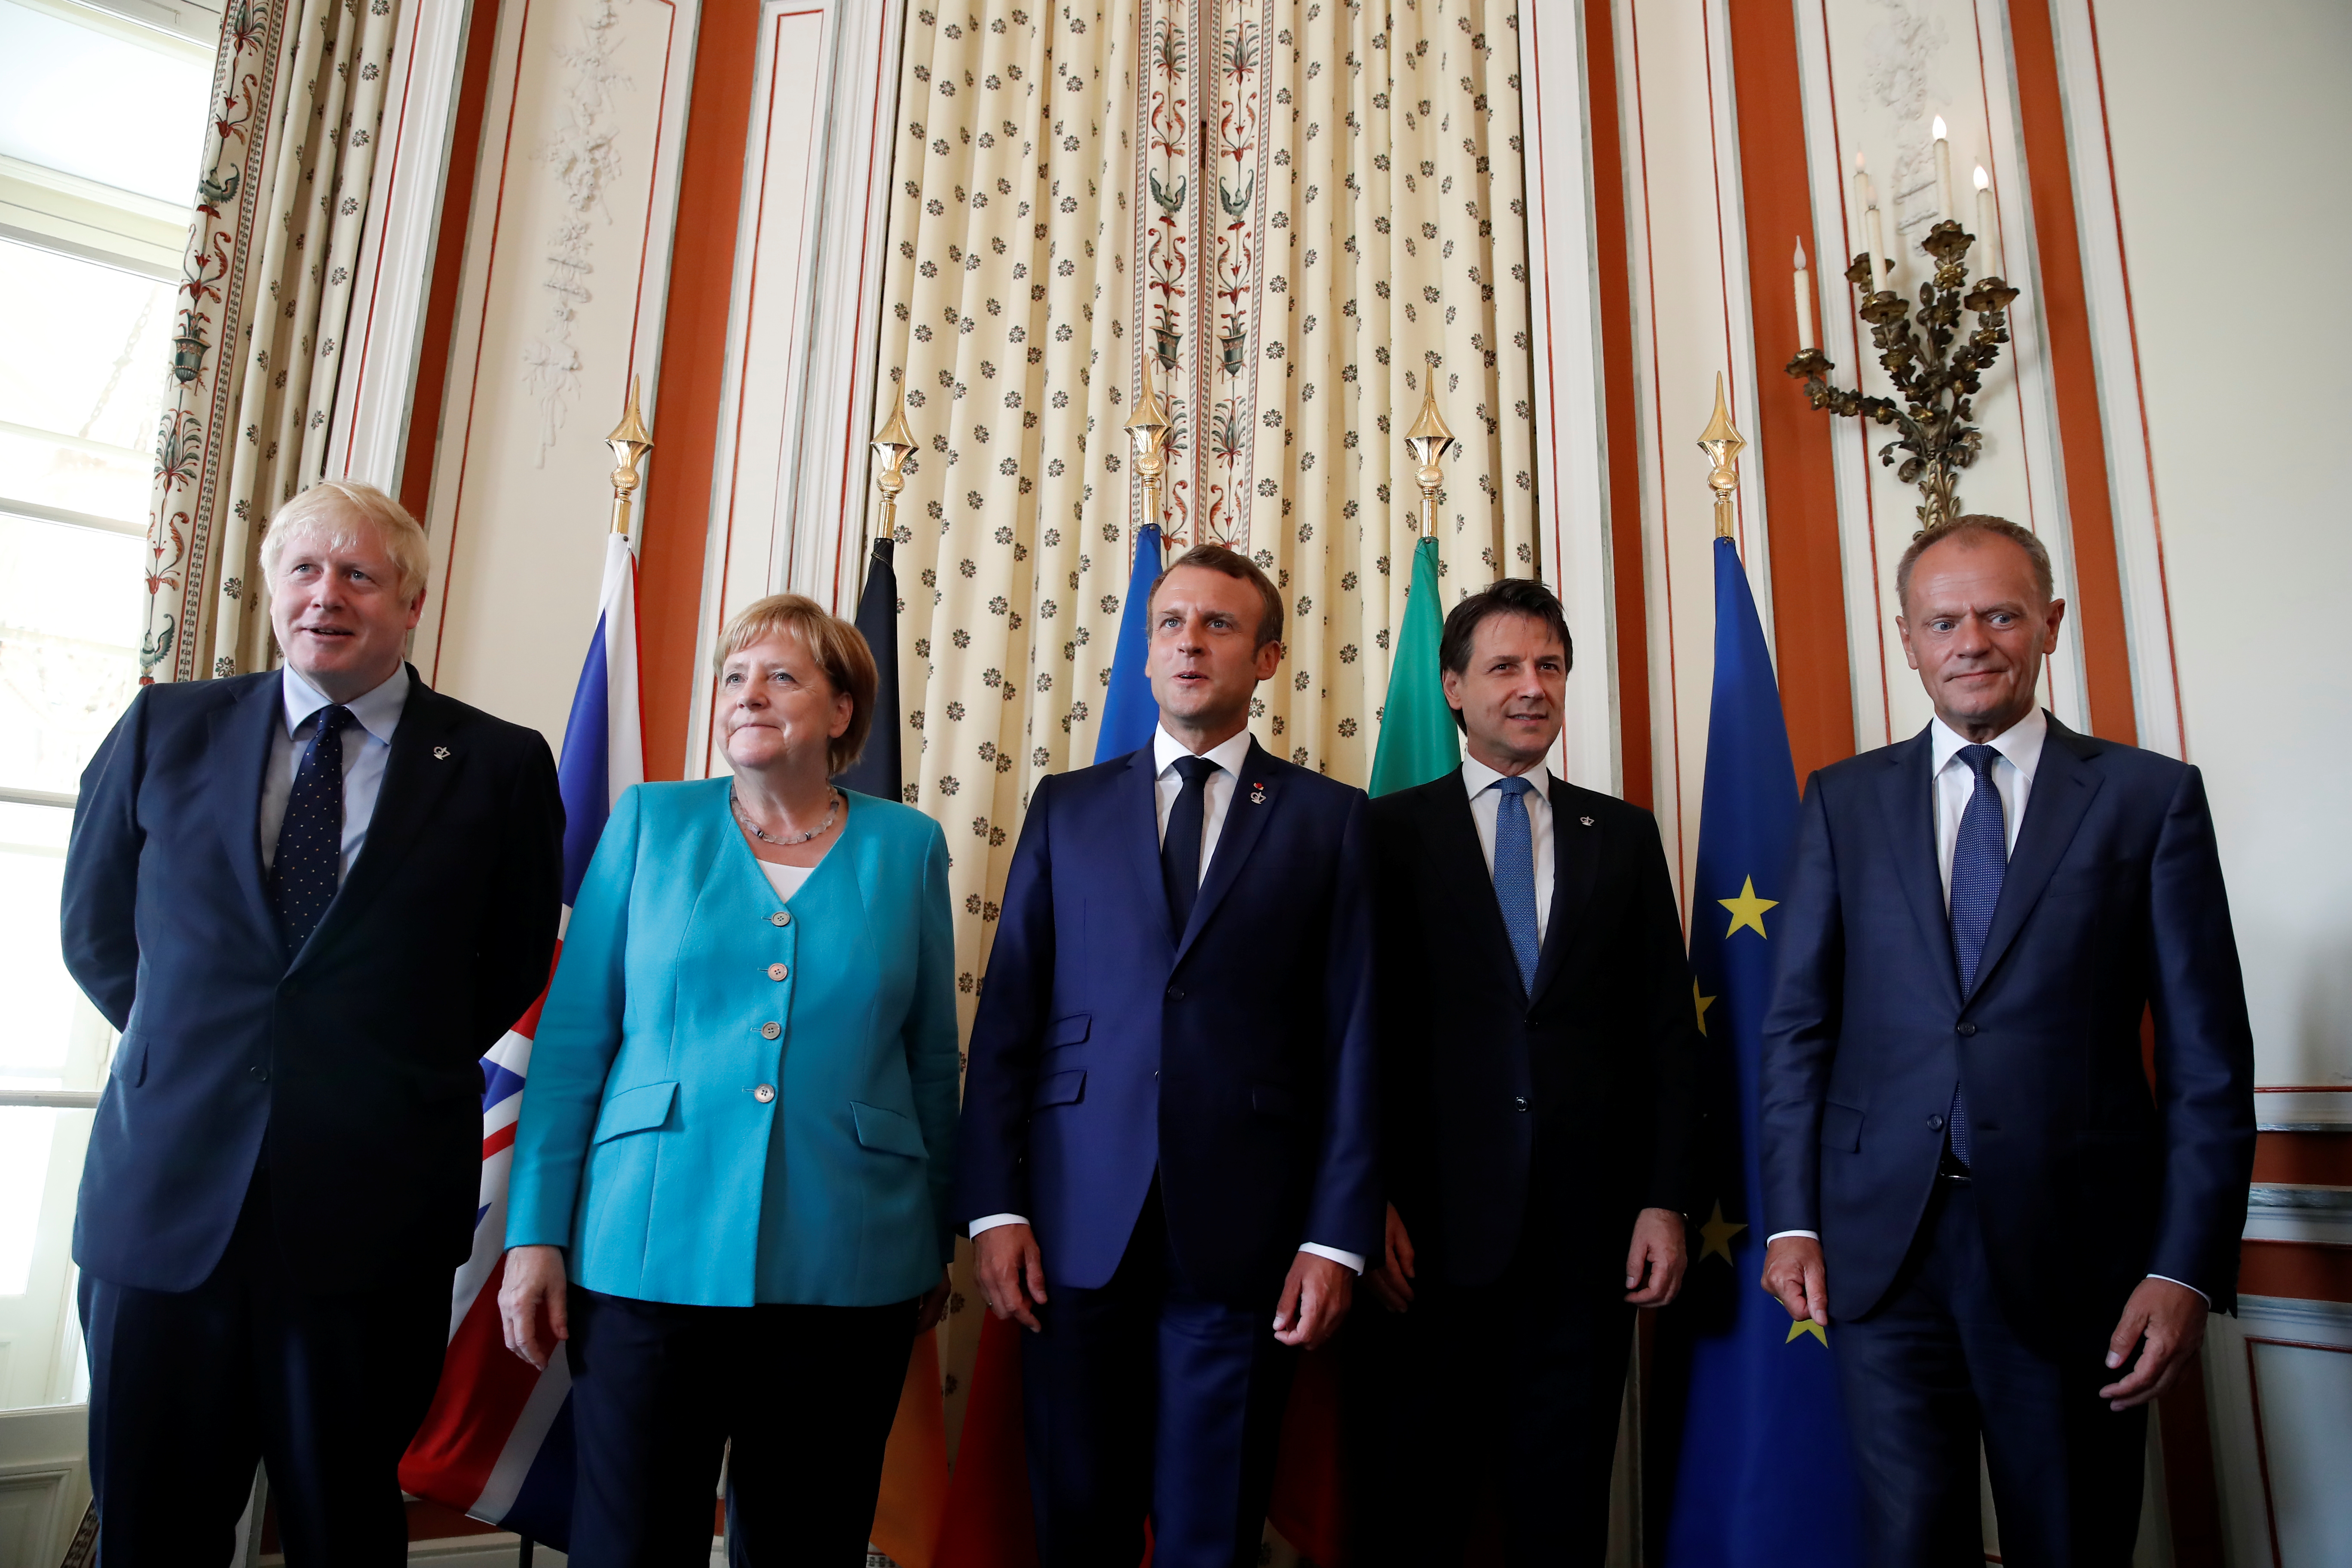 Αμαζόνιος, εμπόριο, οικονομία και Brexit στο μικροσκόπιο των ηγετών της G7